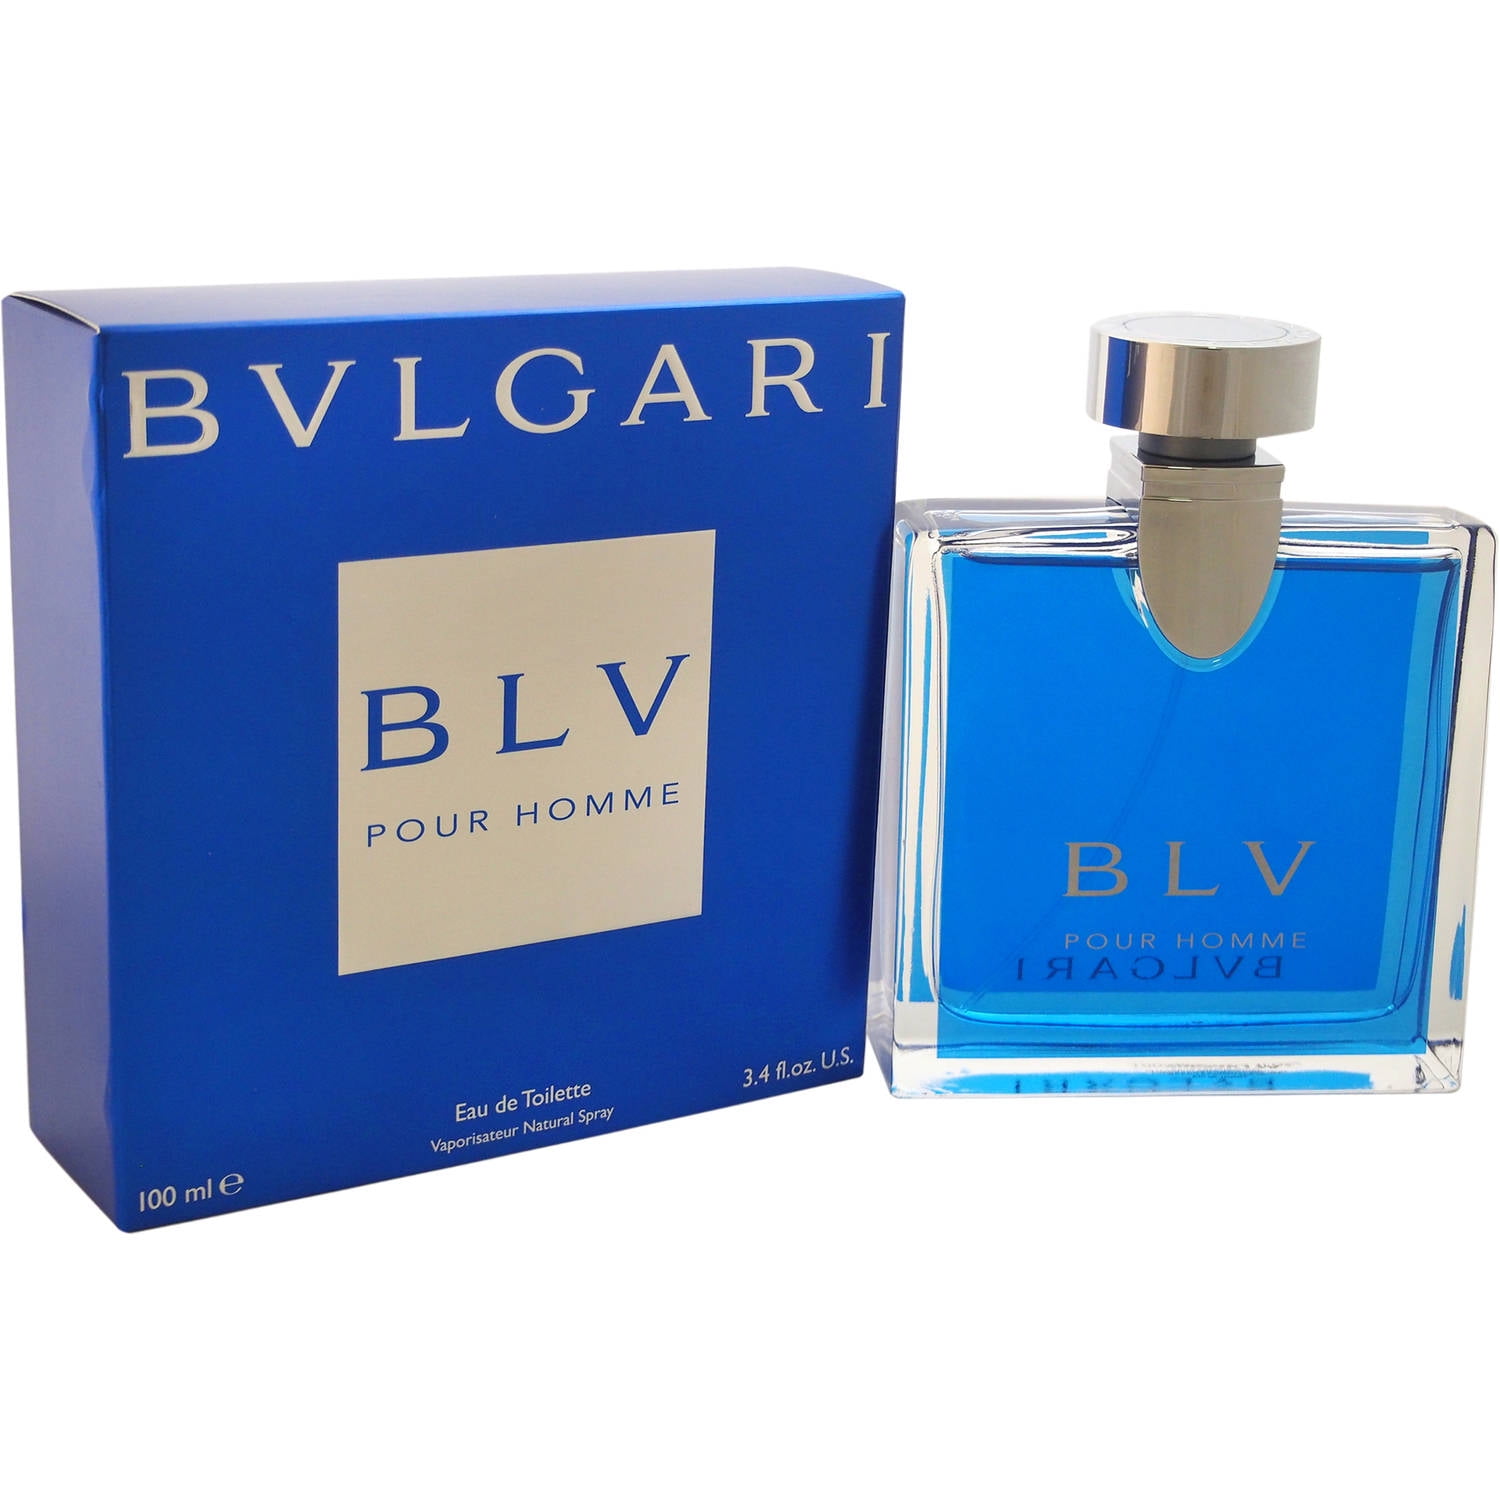 Bulgari Blv 3.4 oz EDT for men – LaBellePerfumes